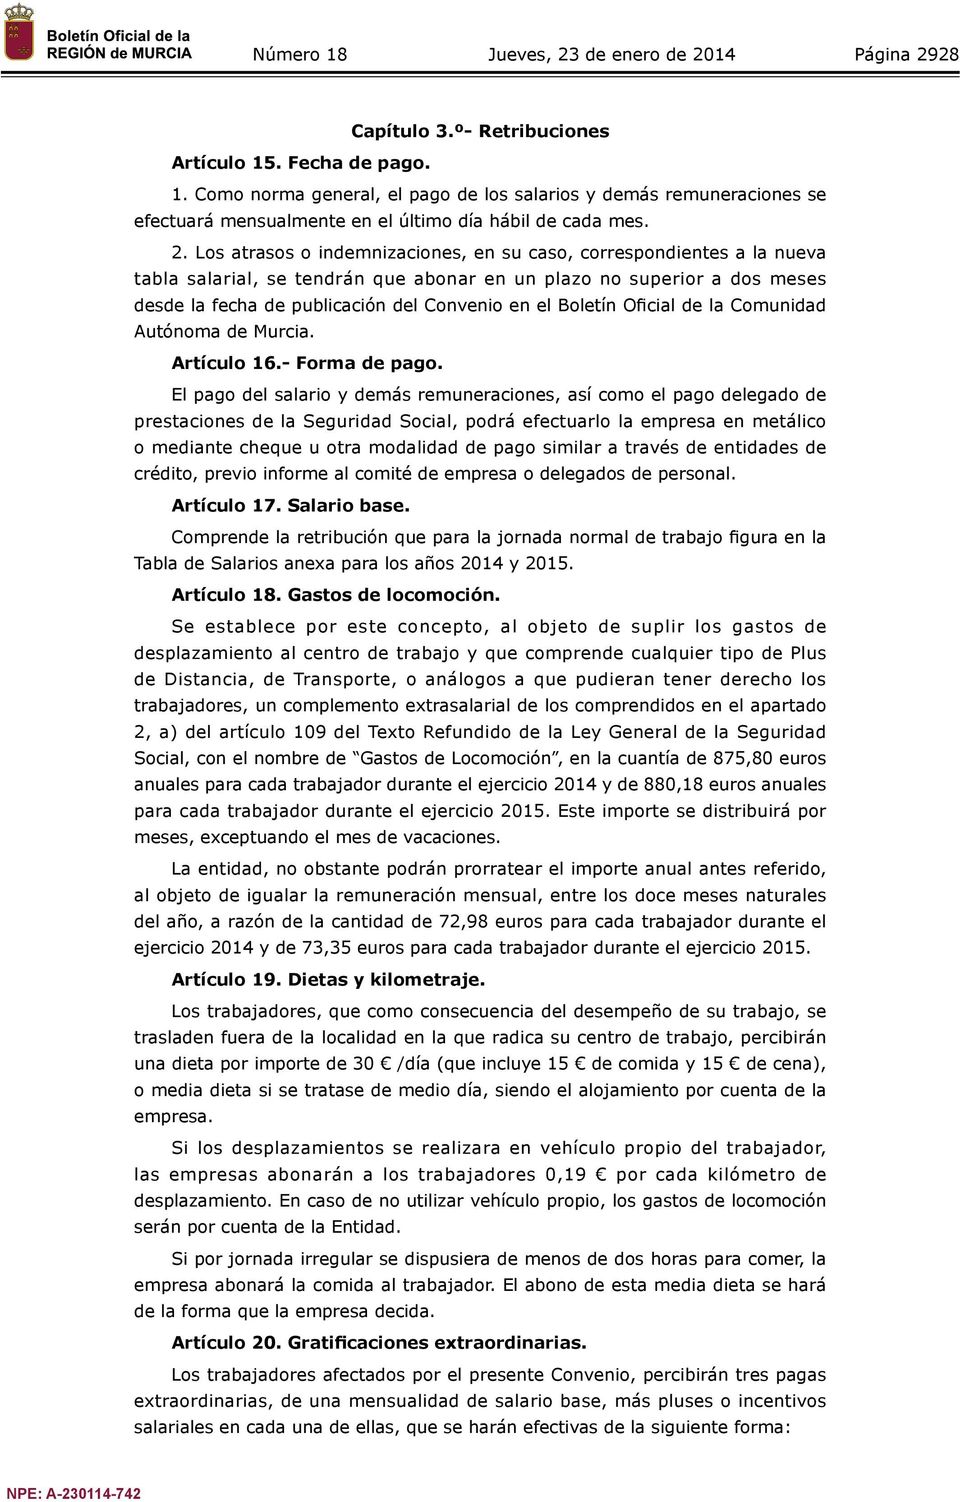 Boletín Oficial de la Comunidad Autónoma de Murcia. Artículo 16.- Forma de pago.